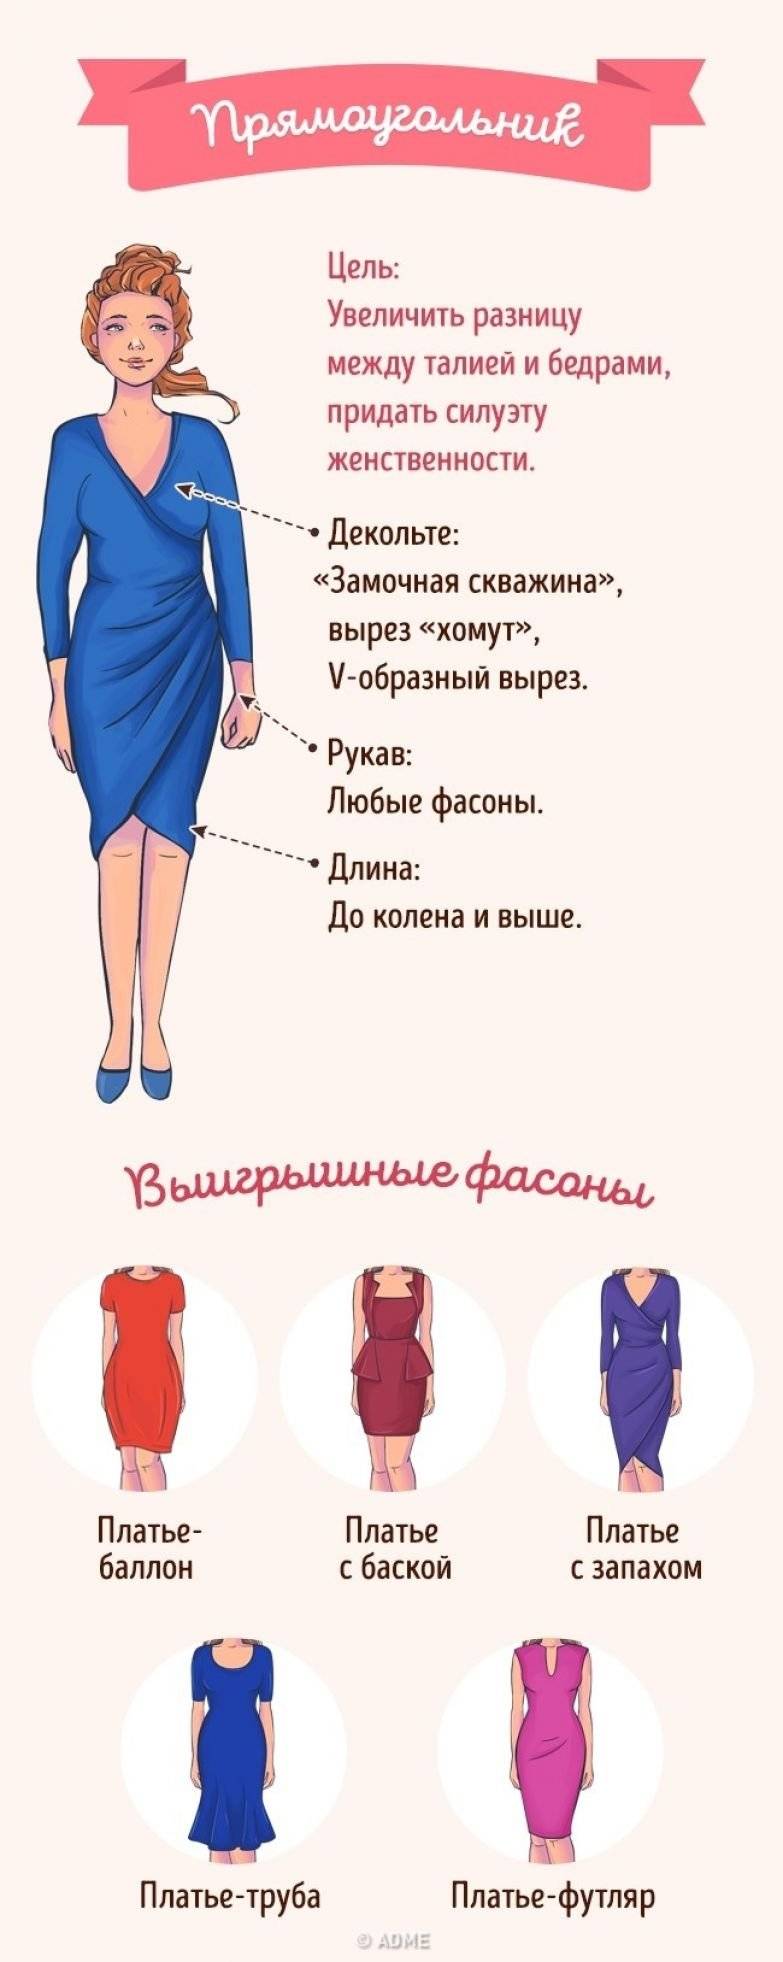 Как подобрать платье по фигуре: размер и цвет